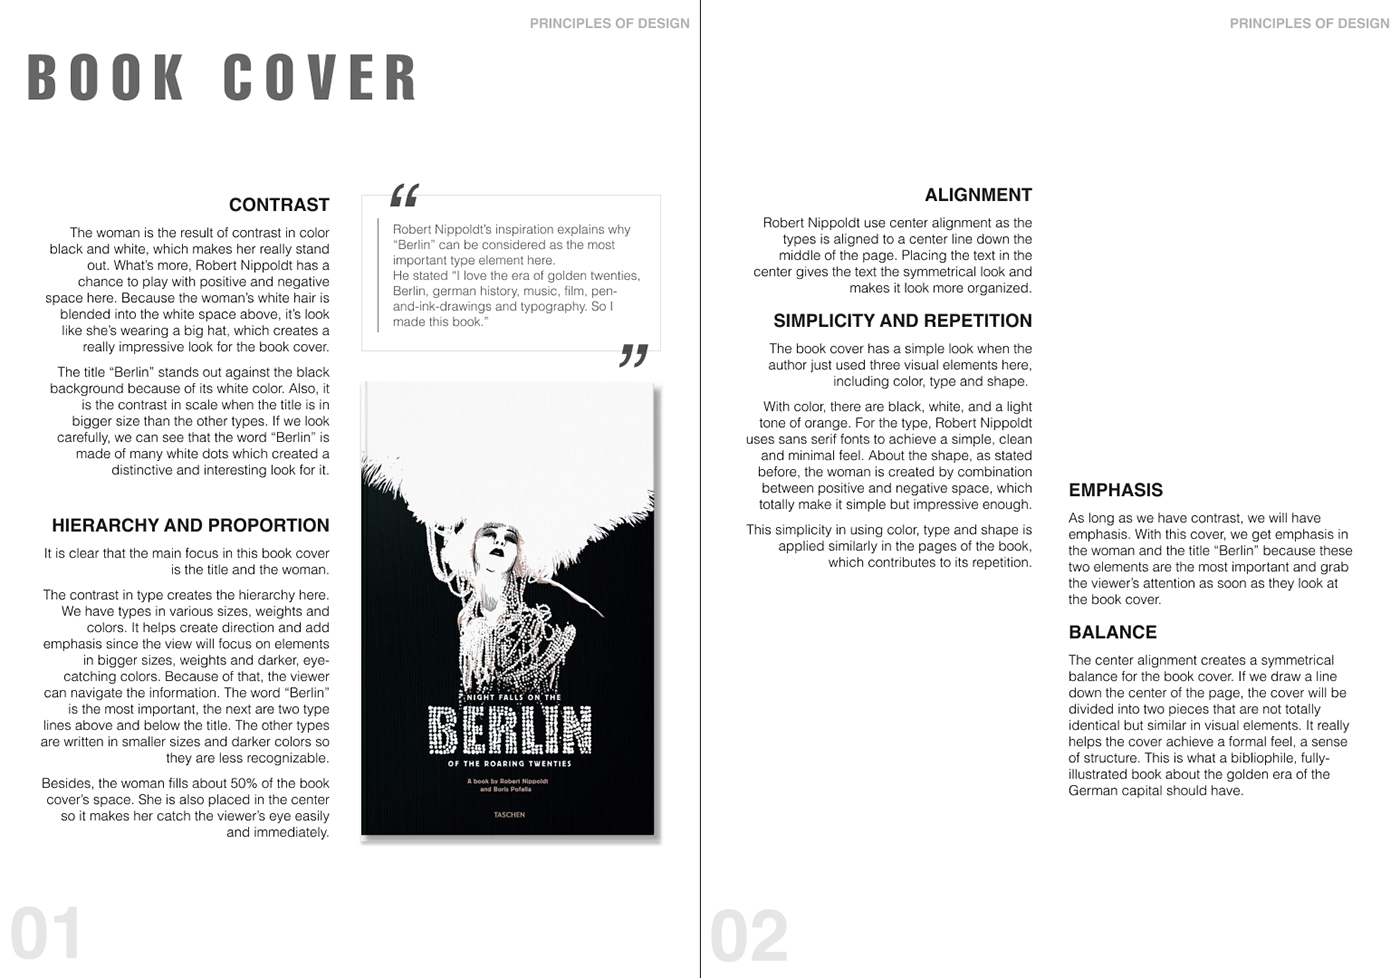 design critique book berlin book design Analysis critique